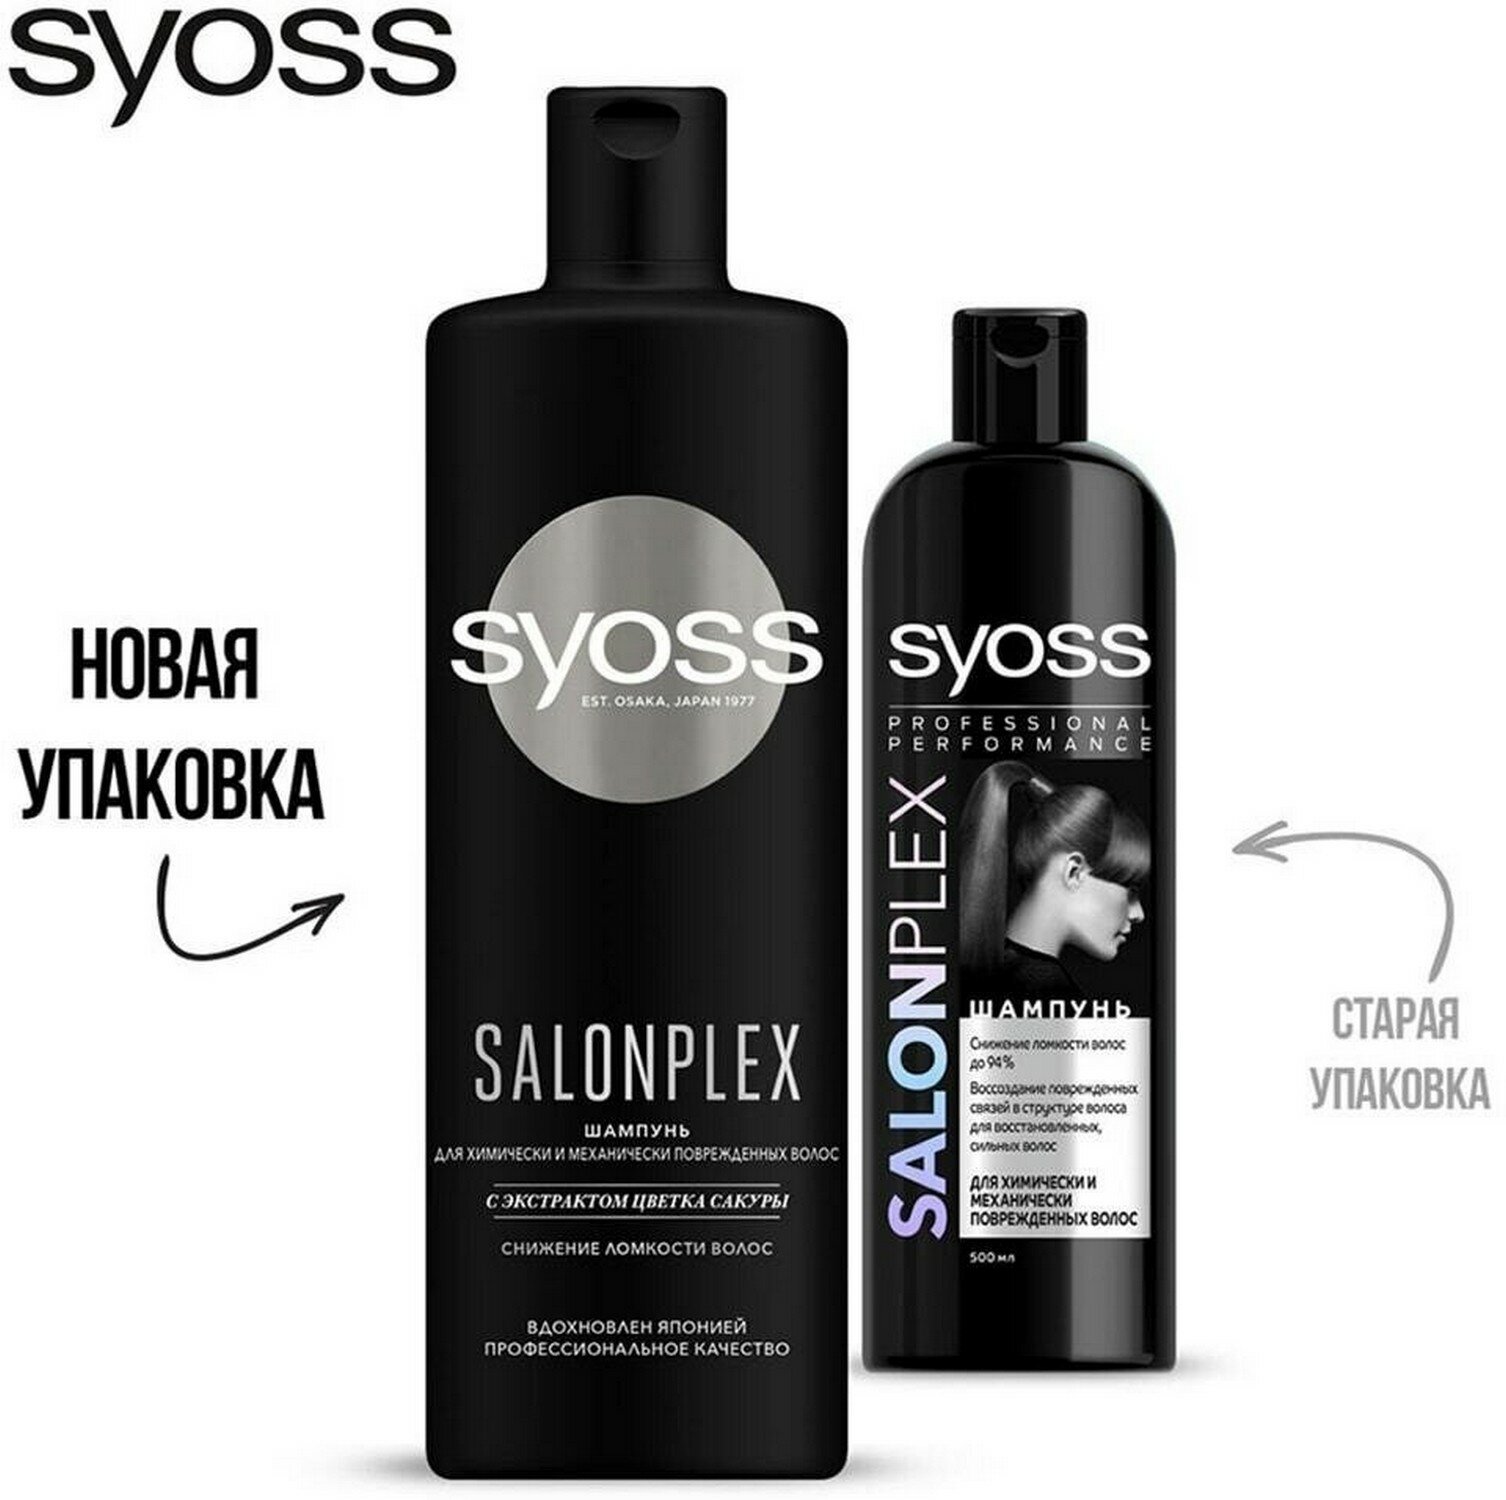 Шампунь для волос Syoss Salonplex с экстрактом цветка сакуры 450мл - фото №15